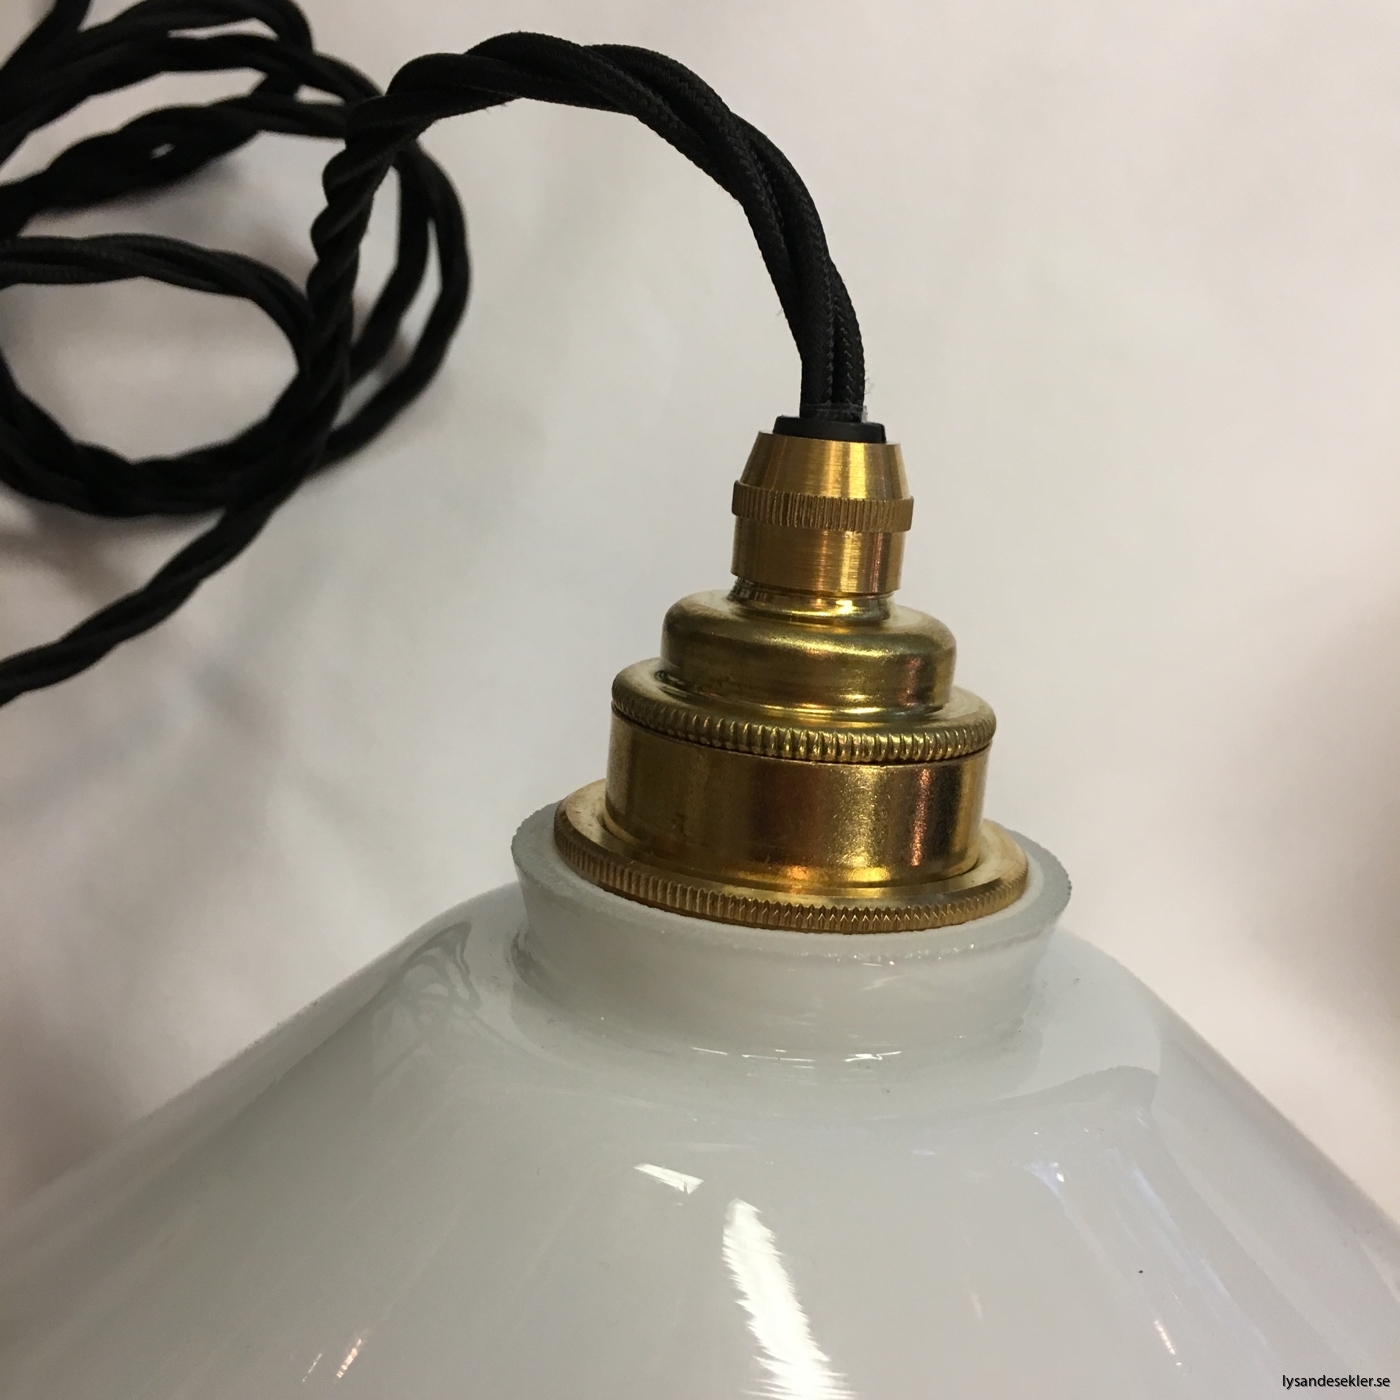 tygsladd textilssladd lampupphäng med 2 ringar utan skruvar för skärm eller glödlampa (10)